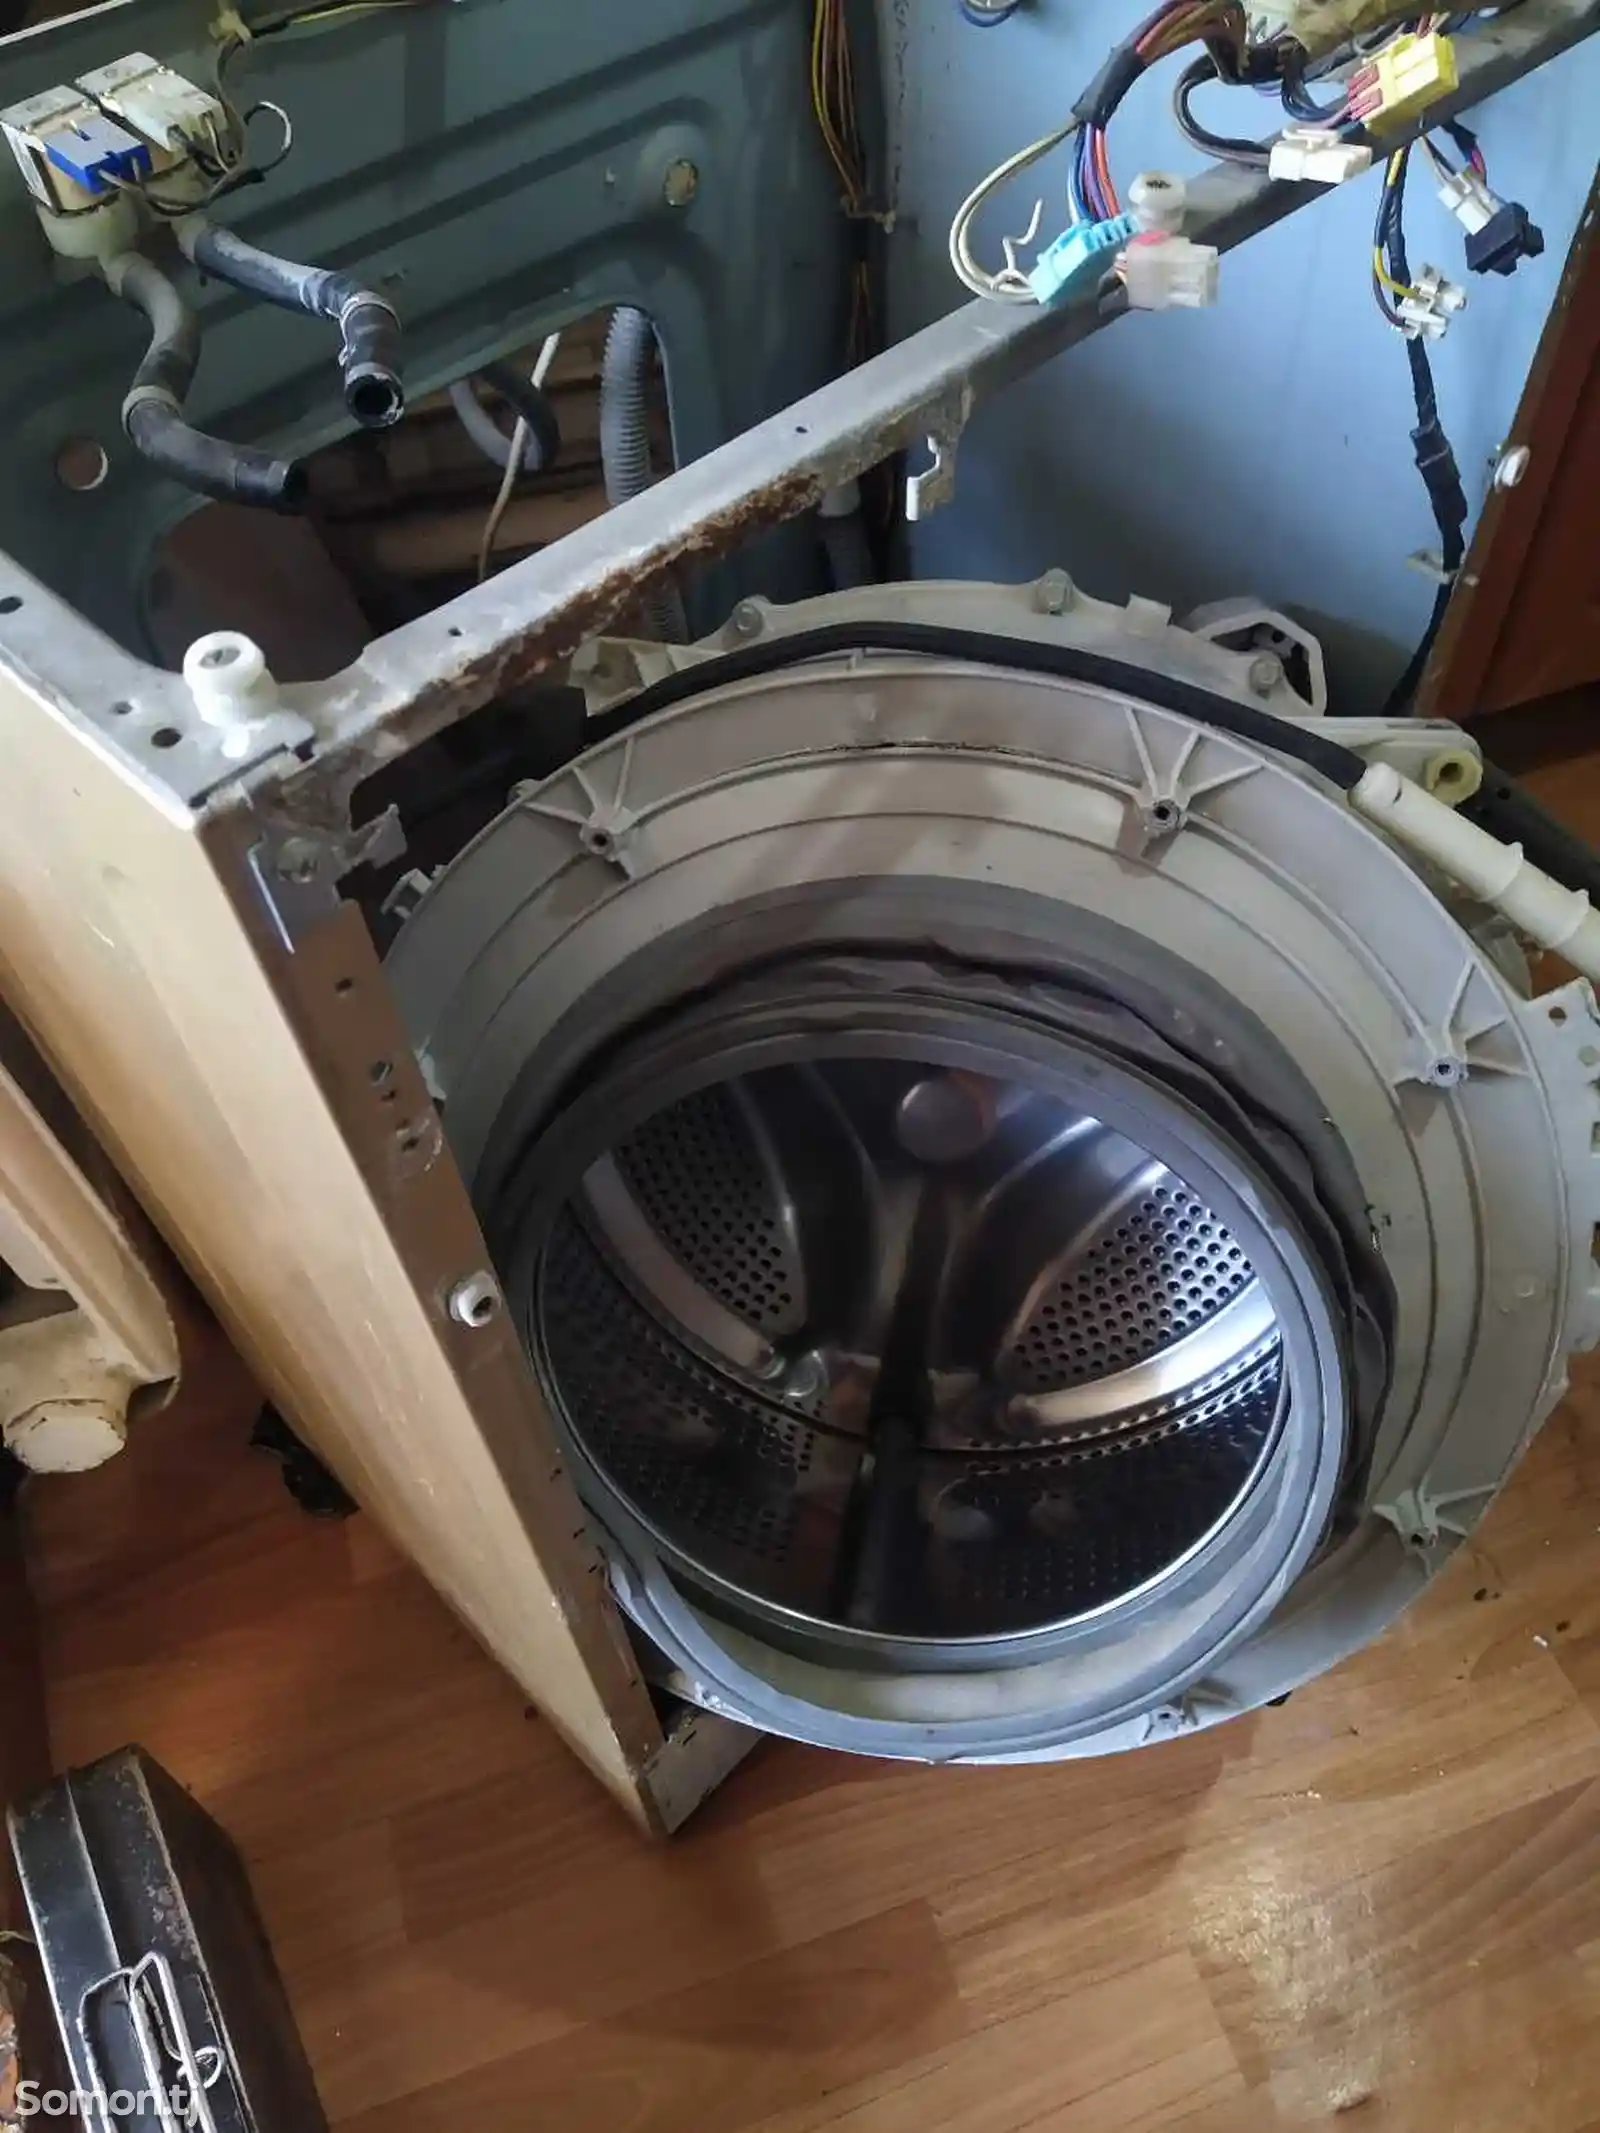 Ремонт стиральных машин-2